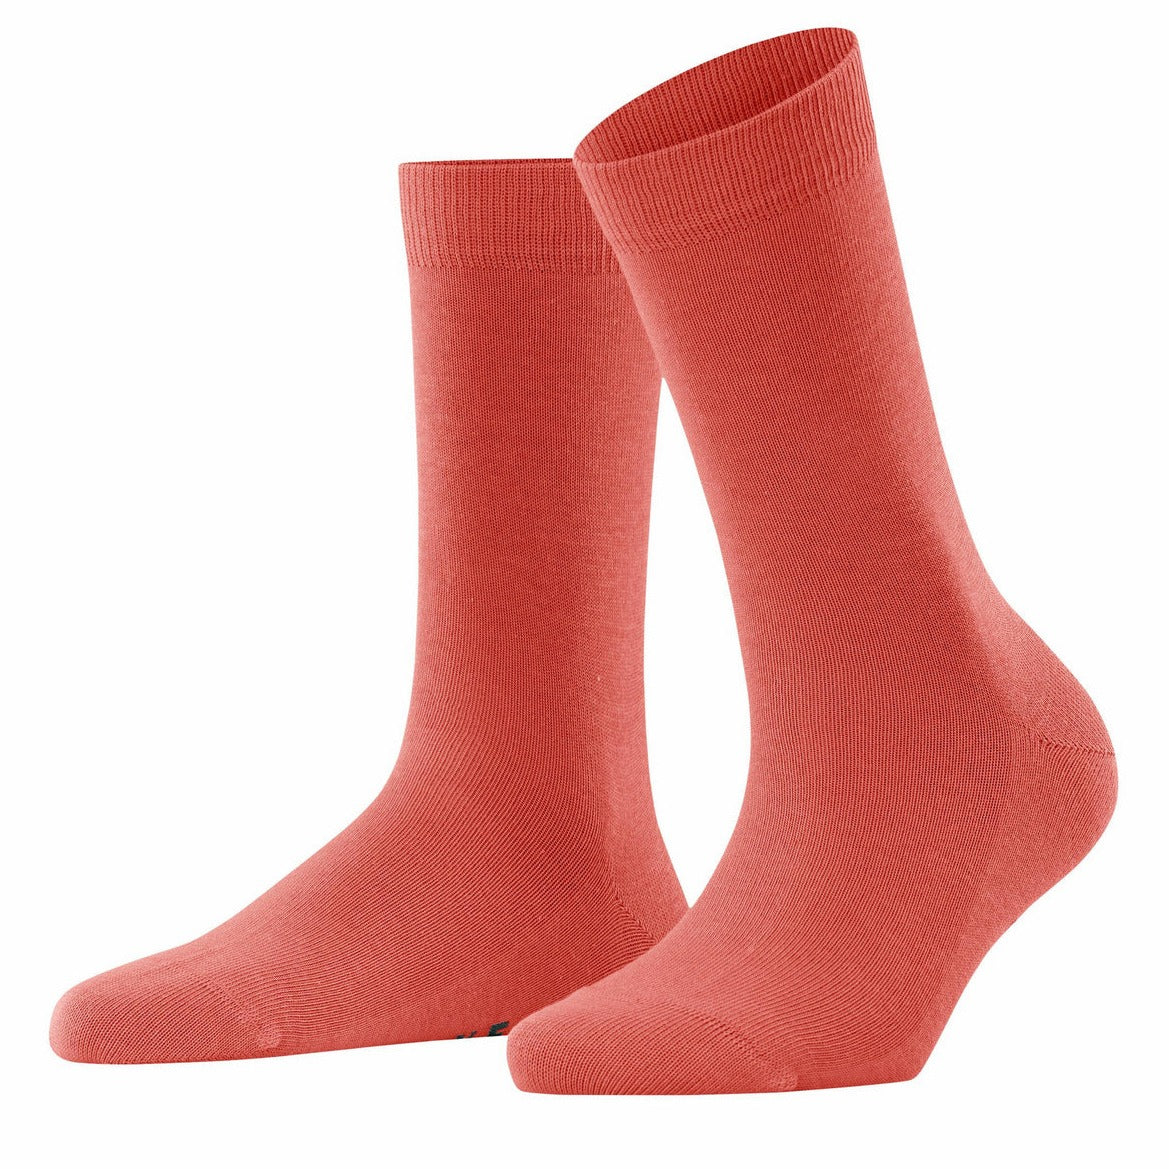 FALKE Family Women's Socks - Orange